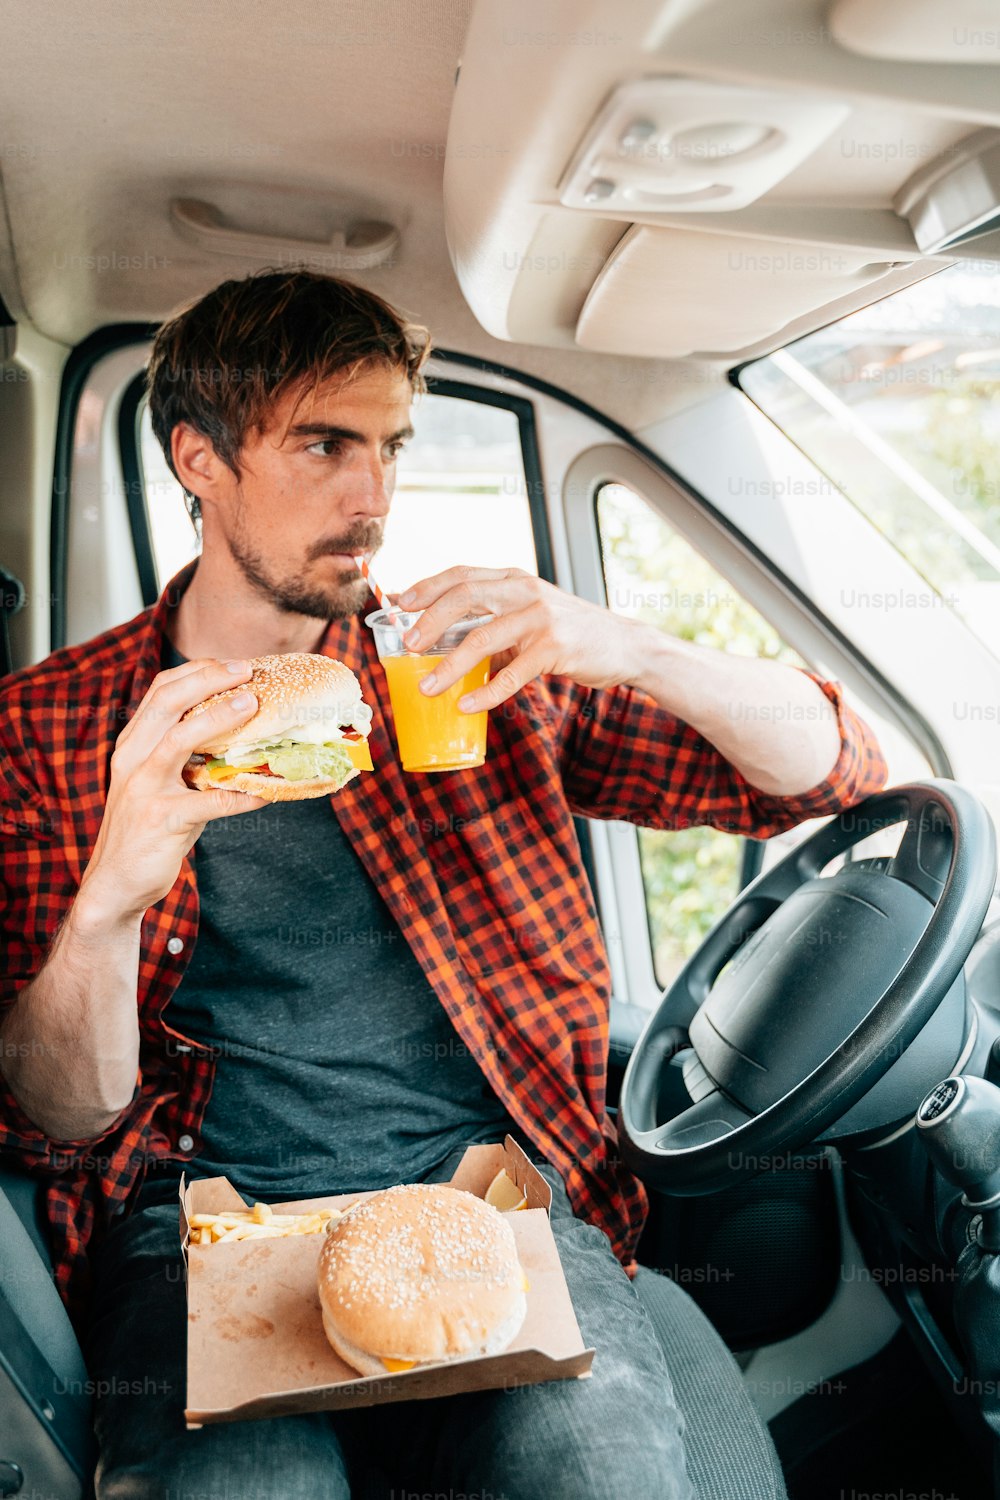 Un uomo seduto sul sedile posteriore di un'auto mangia un panino e beve un